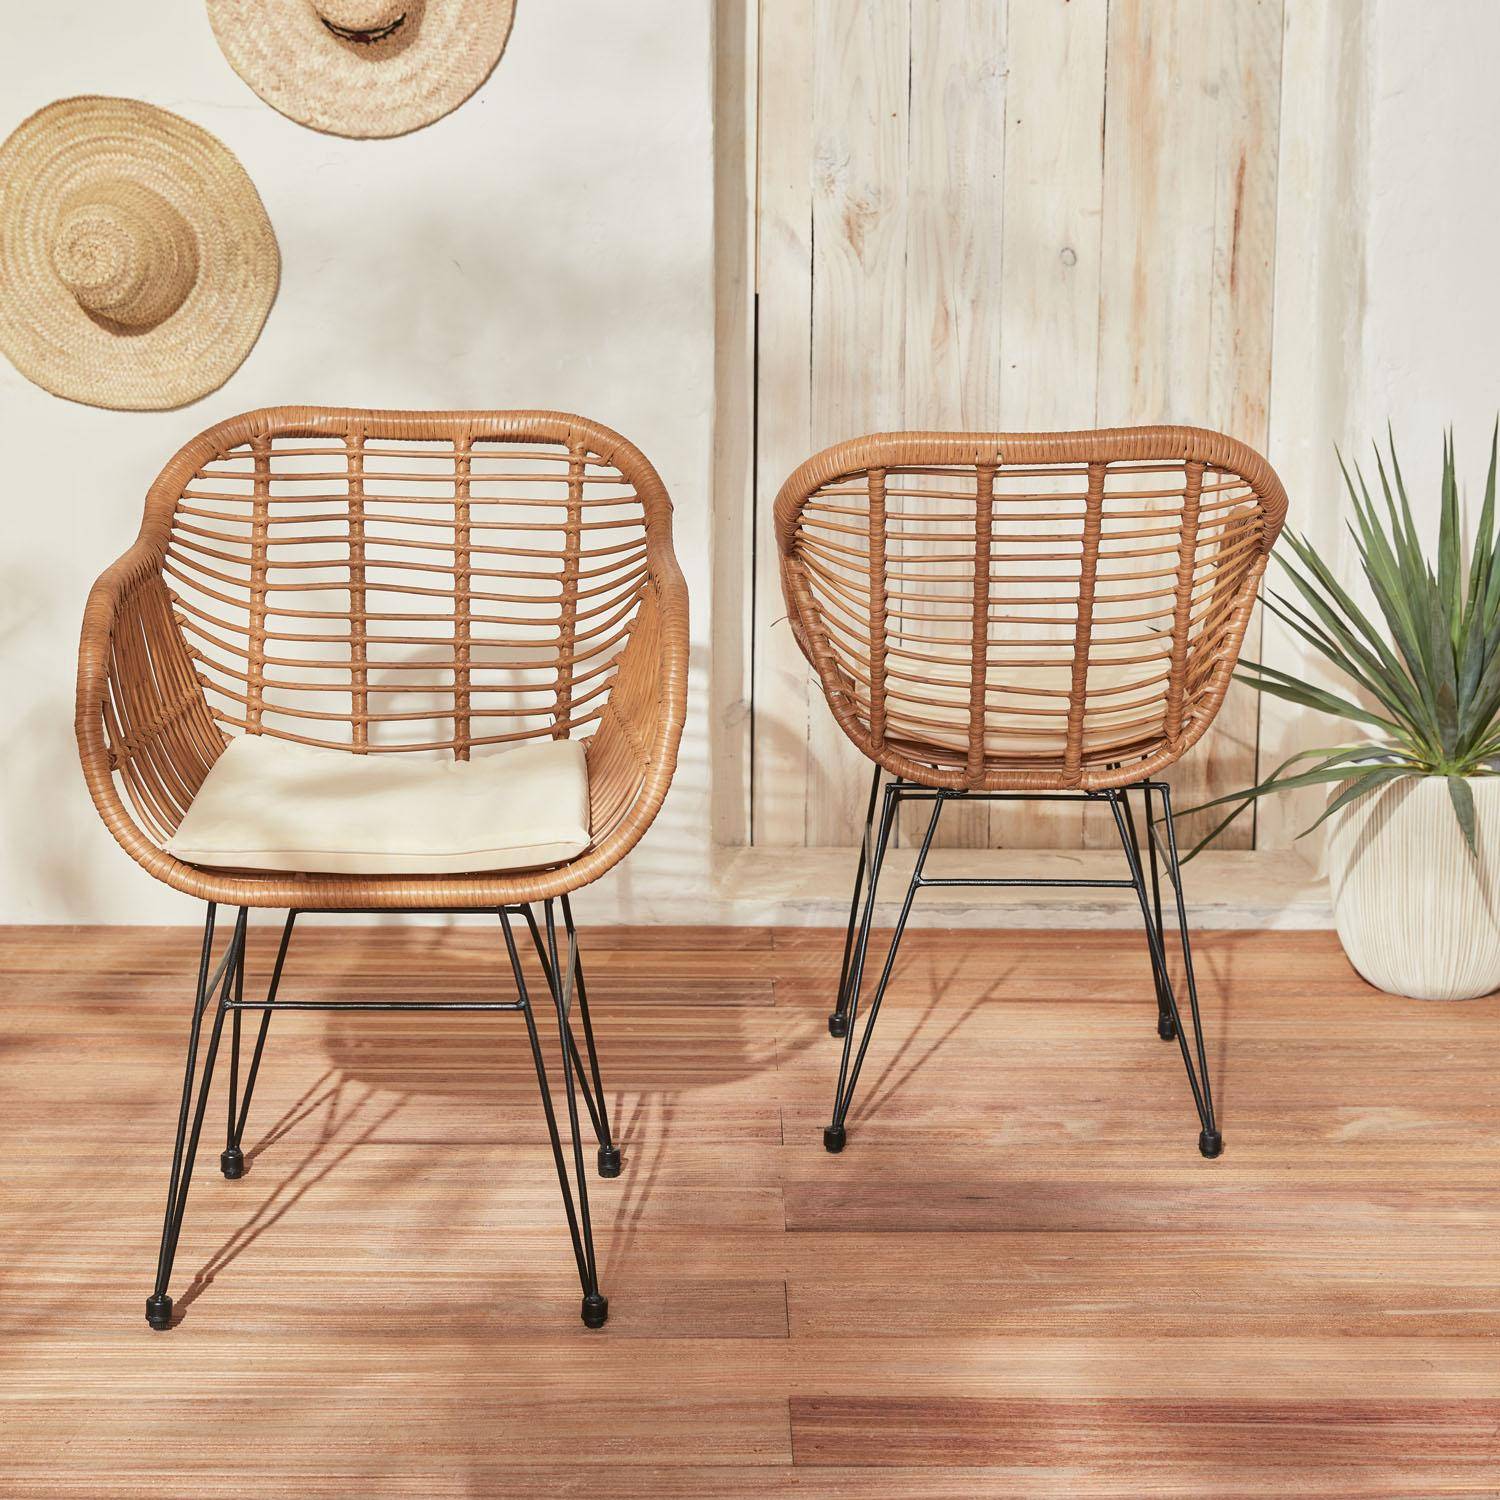 Set van 2 wicker stoelen met bamboe effect, zwart metalen frame, afneembare hoezen, beige kussen Photo3